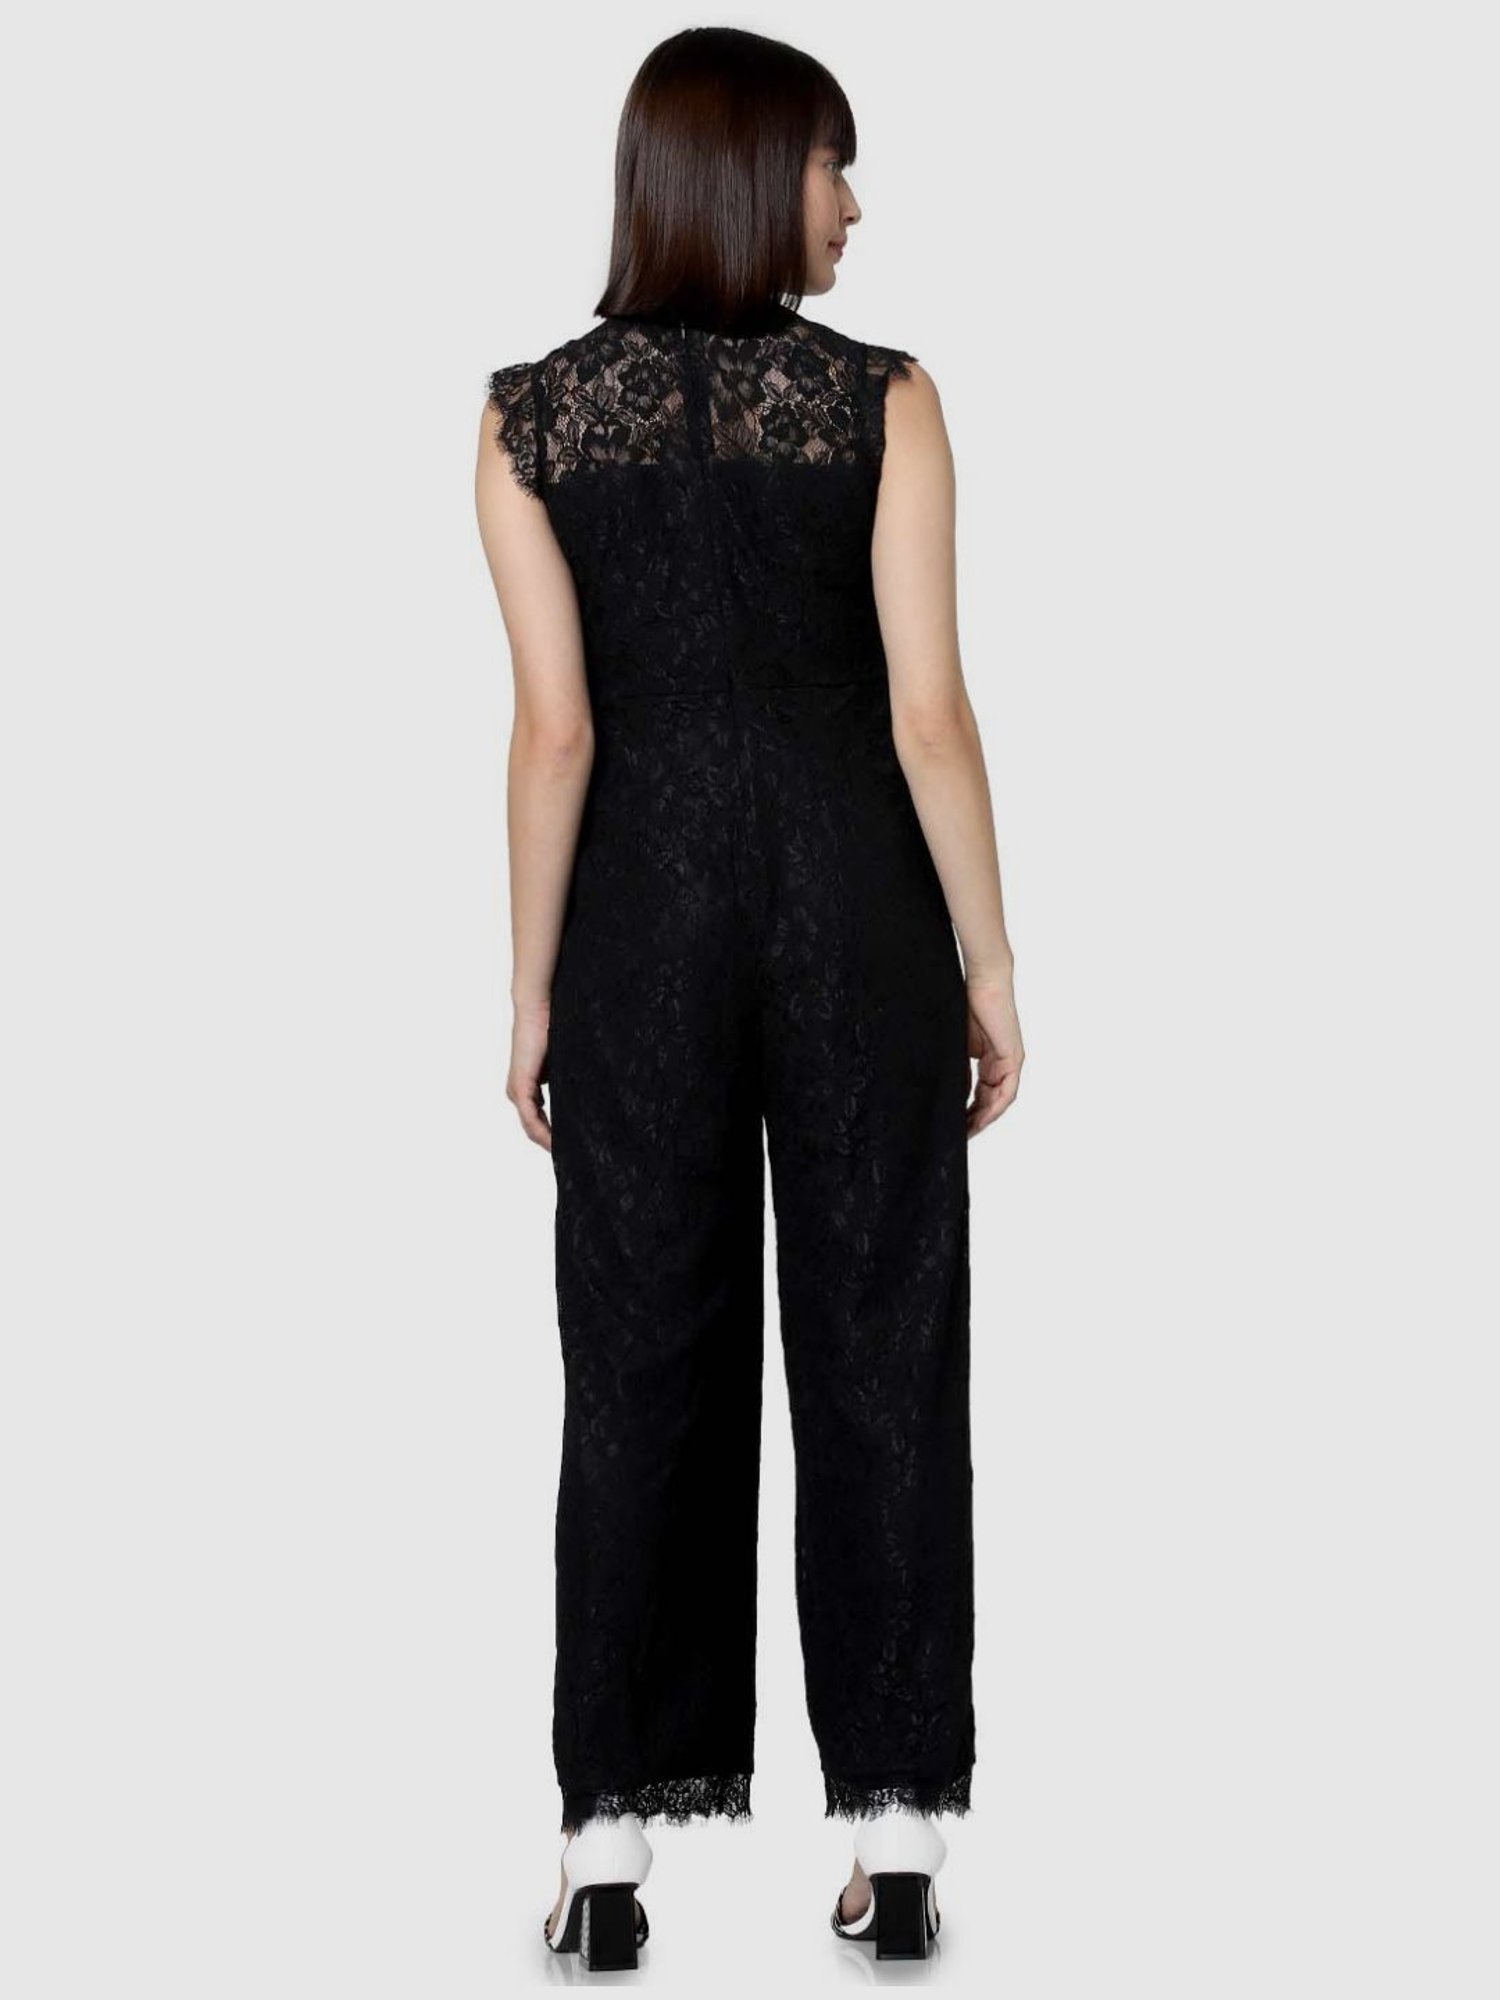 Buy Vero Moda Black Lace Work Jumpsuit for Online @ Tata CLiQ